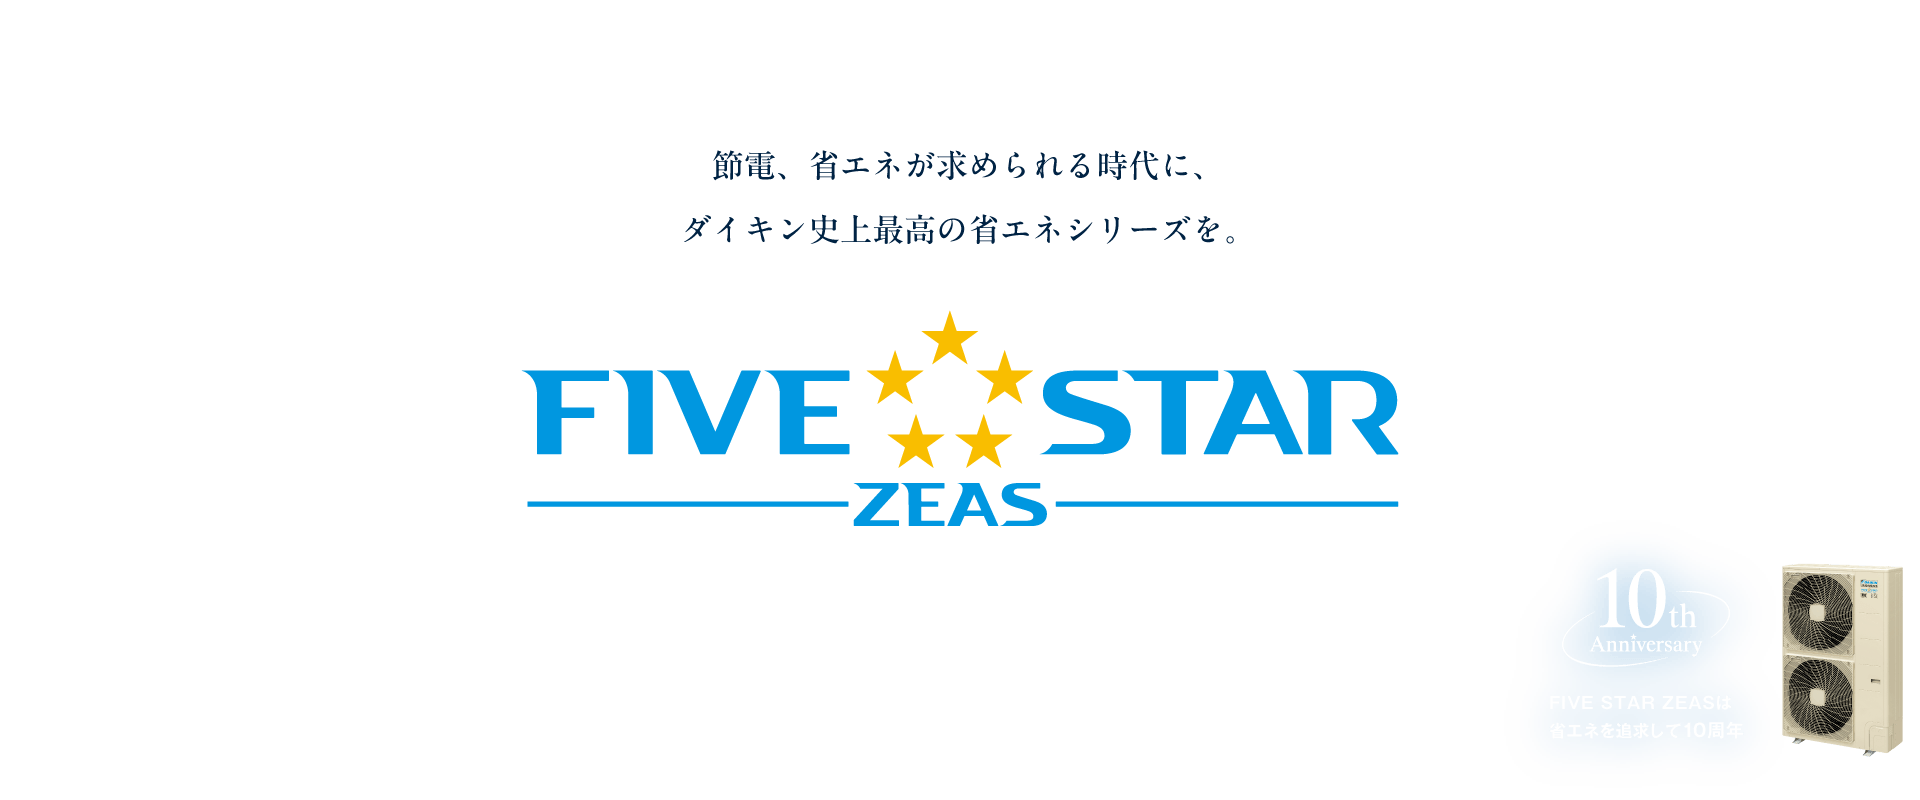 節電、省エネが求められる時代に、ダイキン史上最高の省エネシリーズを‐FIVE STAR ZEAS‐